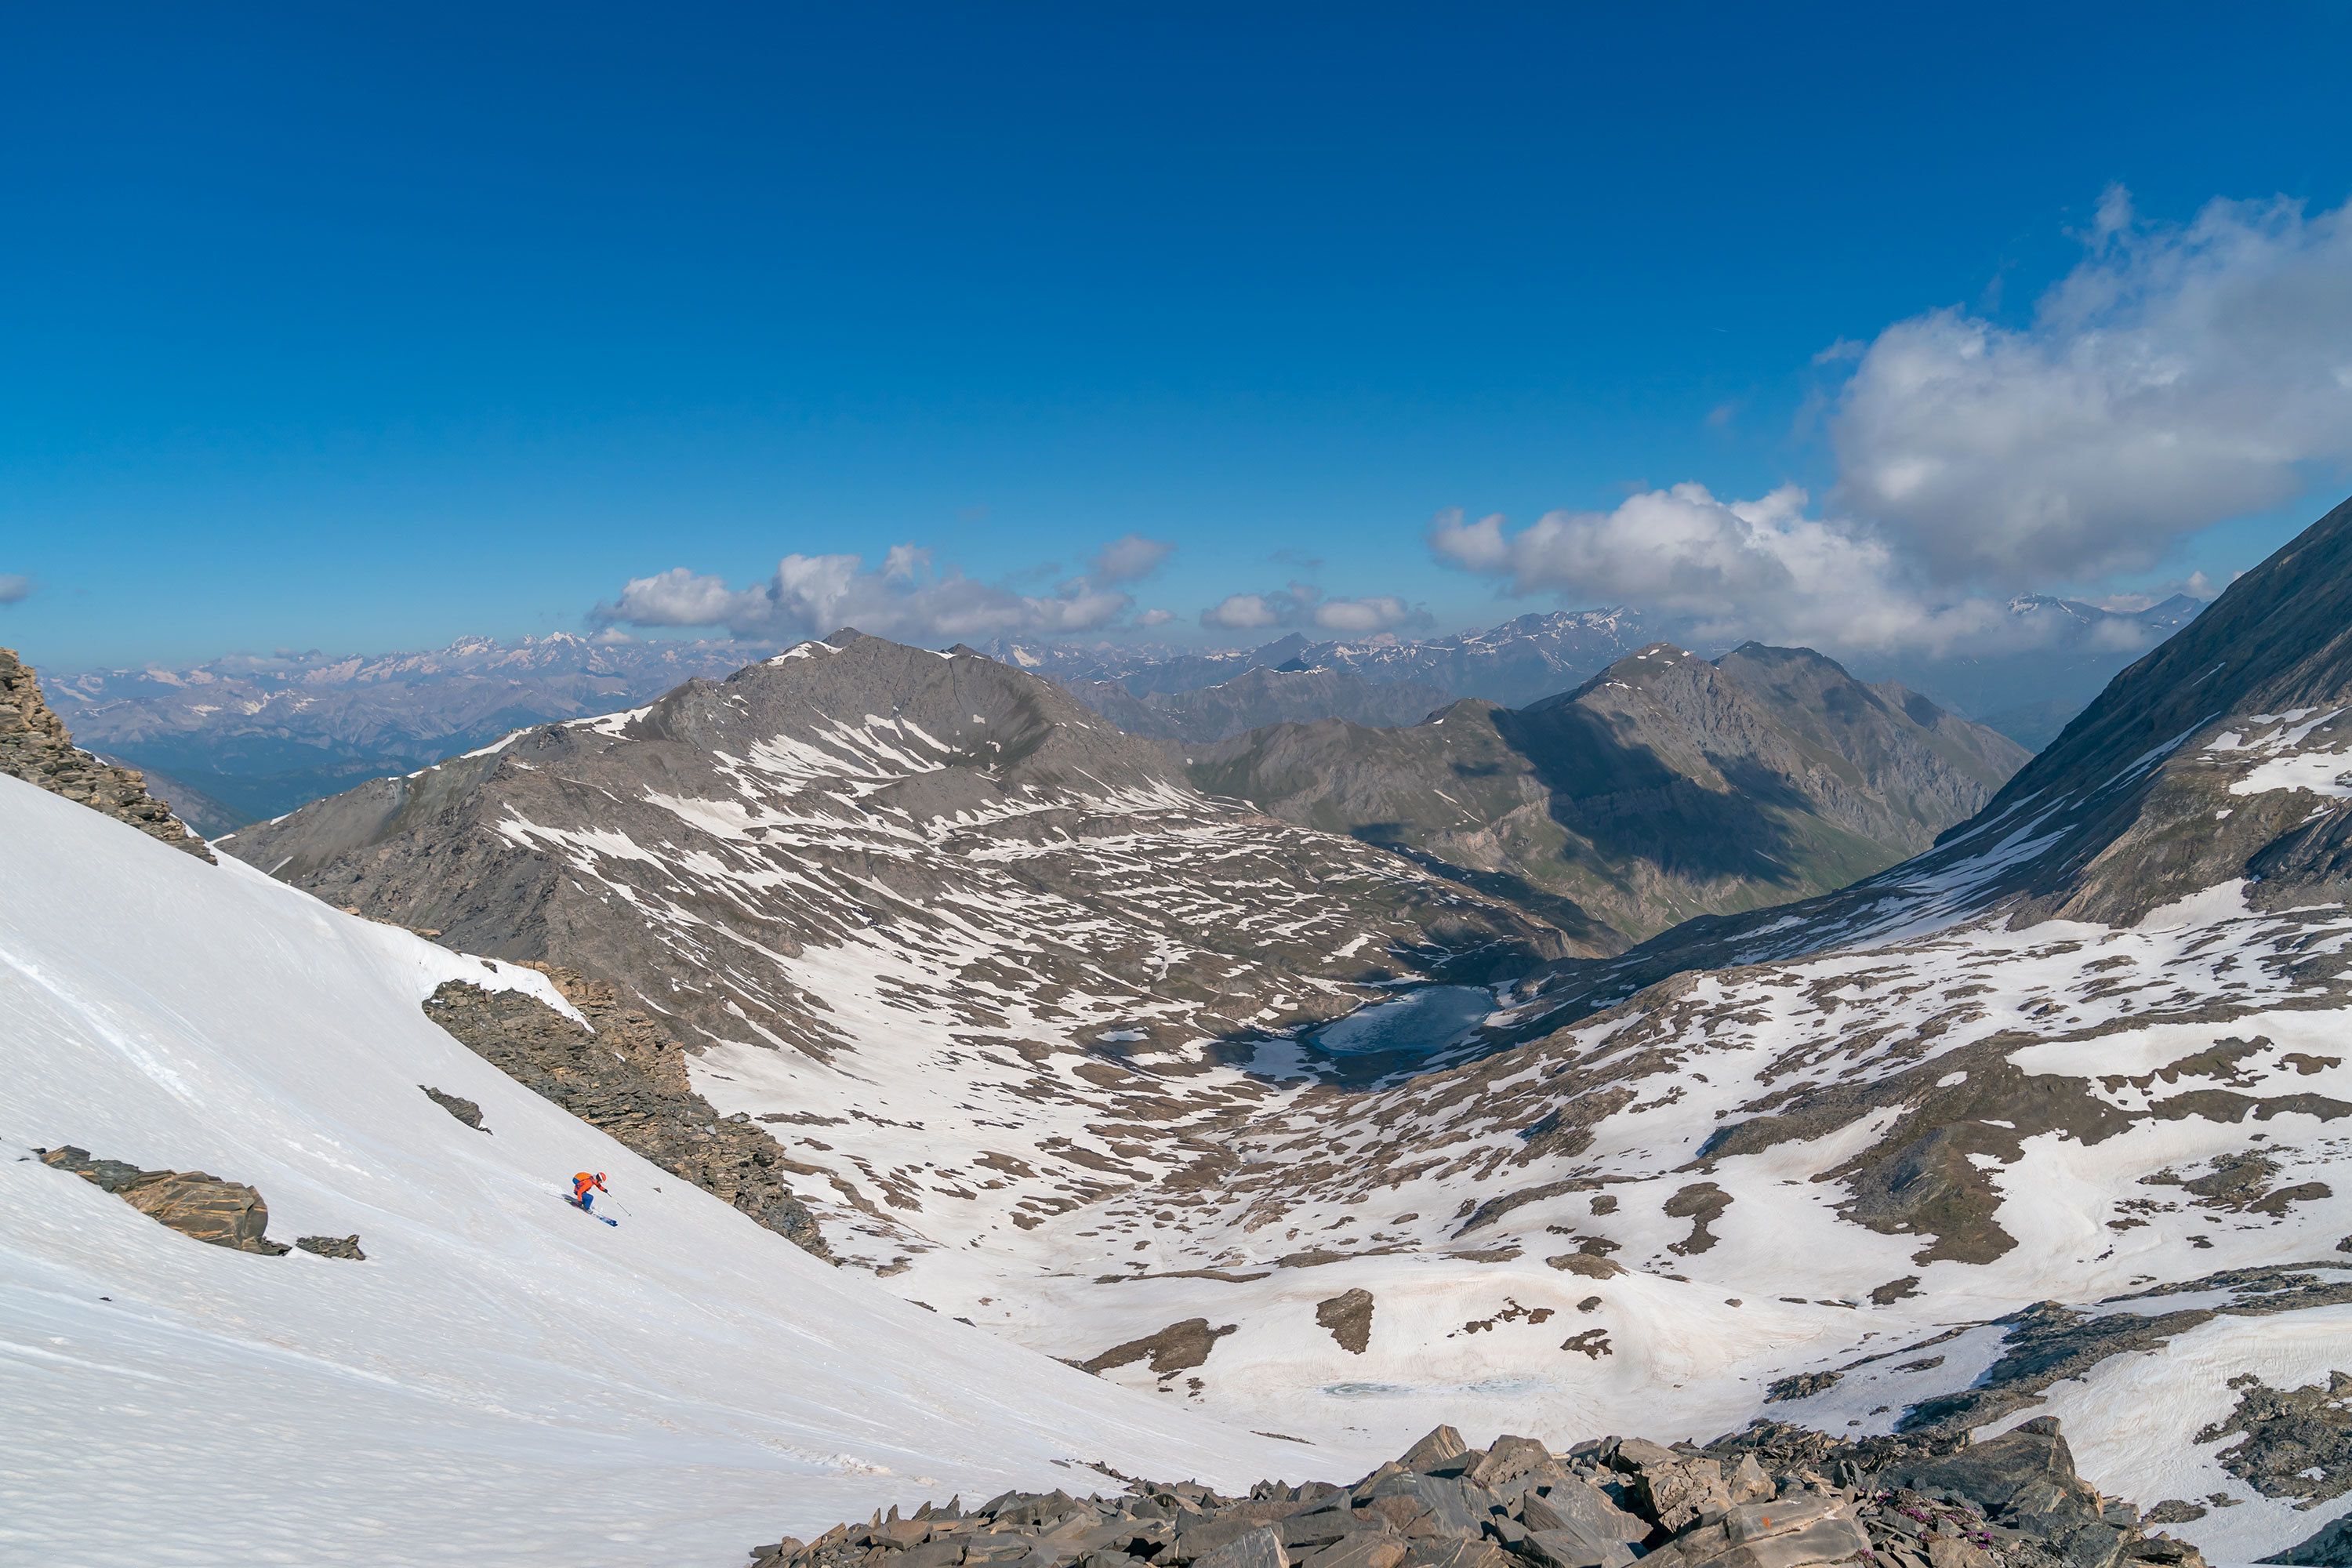 Lekker skiën vanaf de Pic d'Asti, met de Ecrins als achtergrond